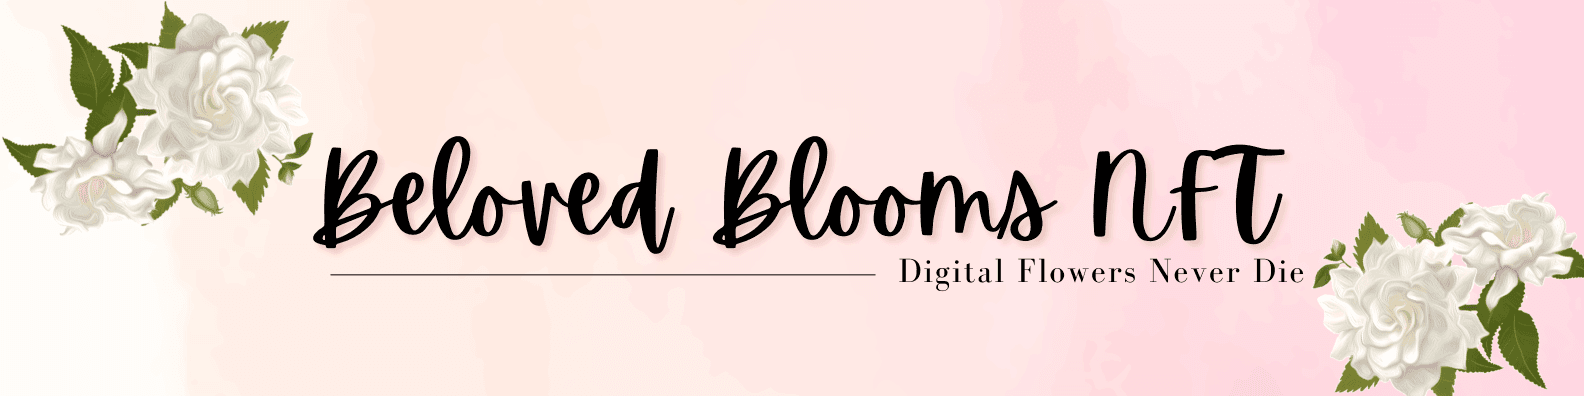 Beloved-Blooms-NFT banner